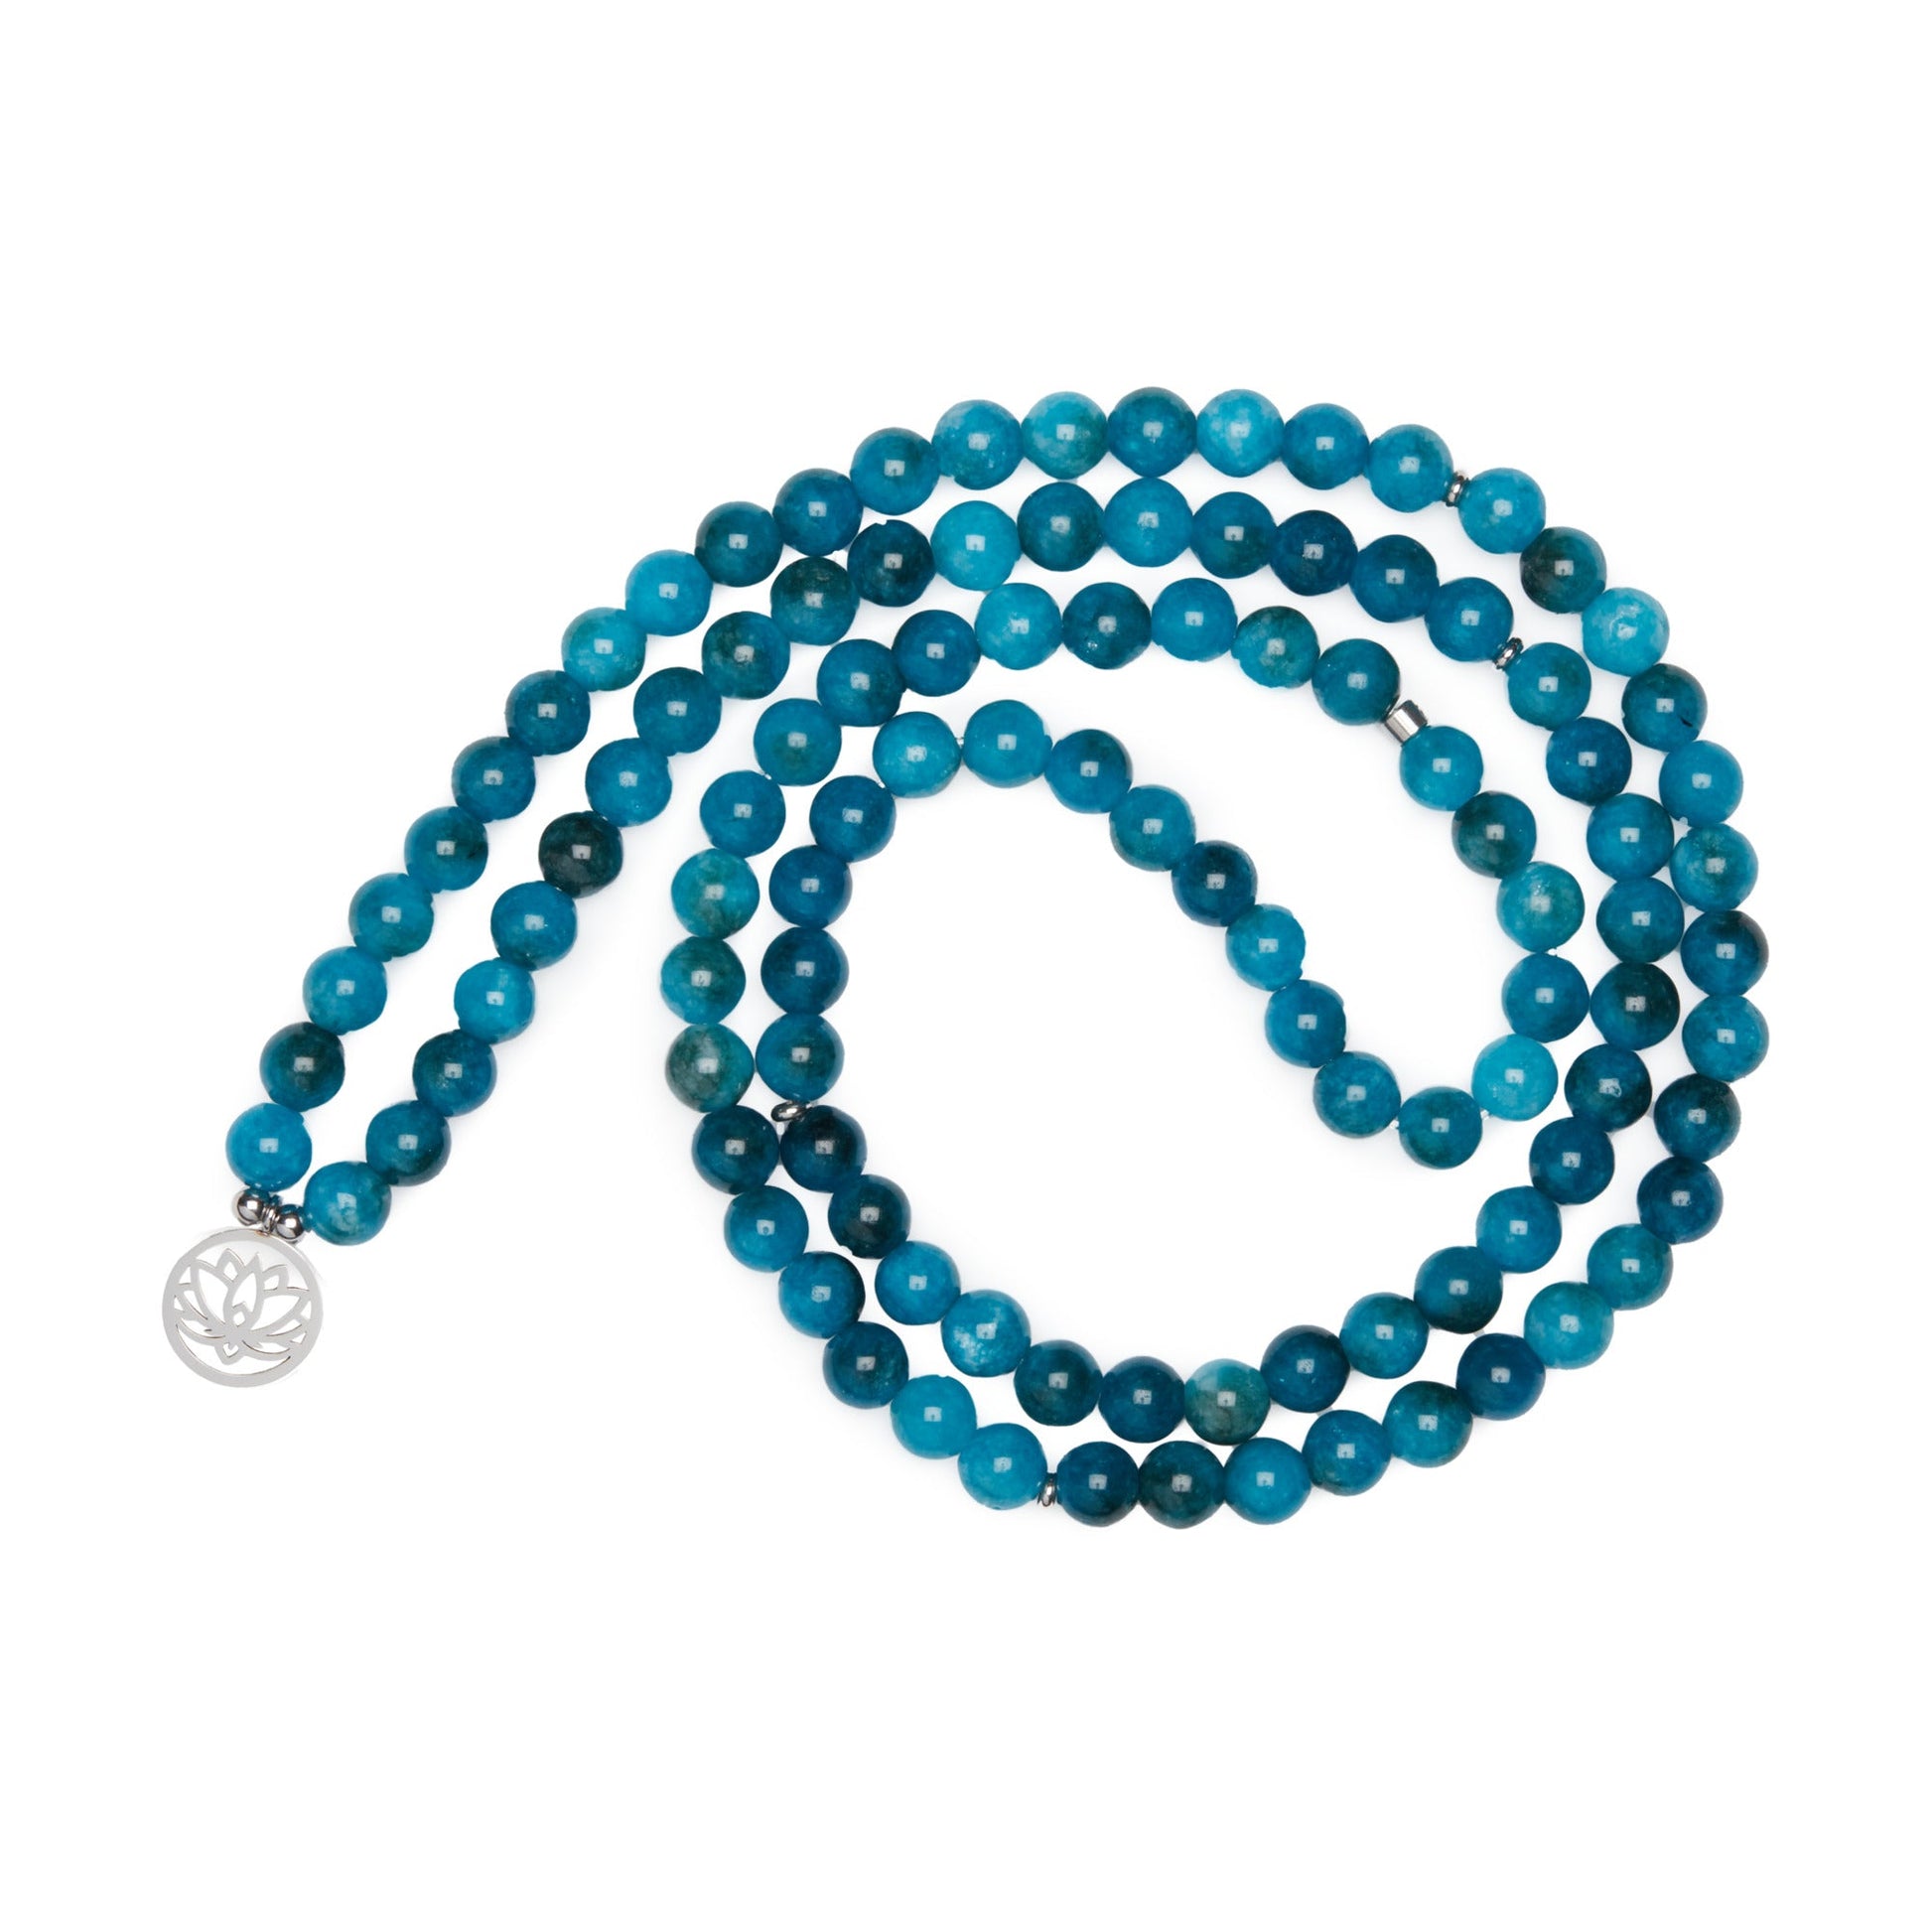 Bracelet Mala "Révélation" de 108 perles en Apatite - Karma Yoga Shop